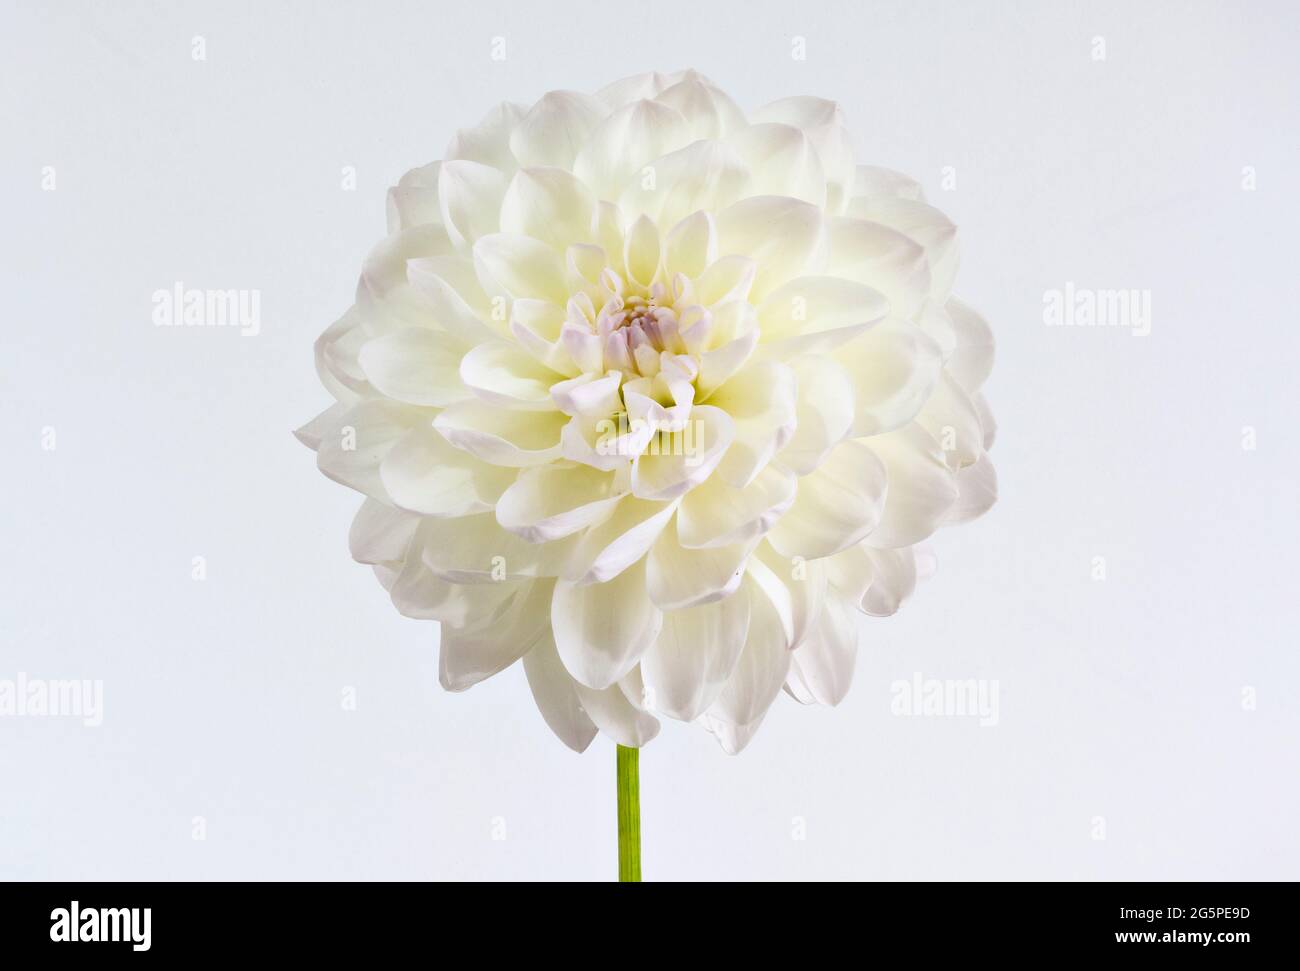 Nahaufnahme einer weißen Pom Pom Dahlia Blume. Sie gehören zur Familie der Compositae (auch Asteraceae genannt) und stammen aus Mexiko und Südamerika. Stockfoto